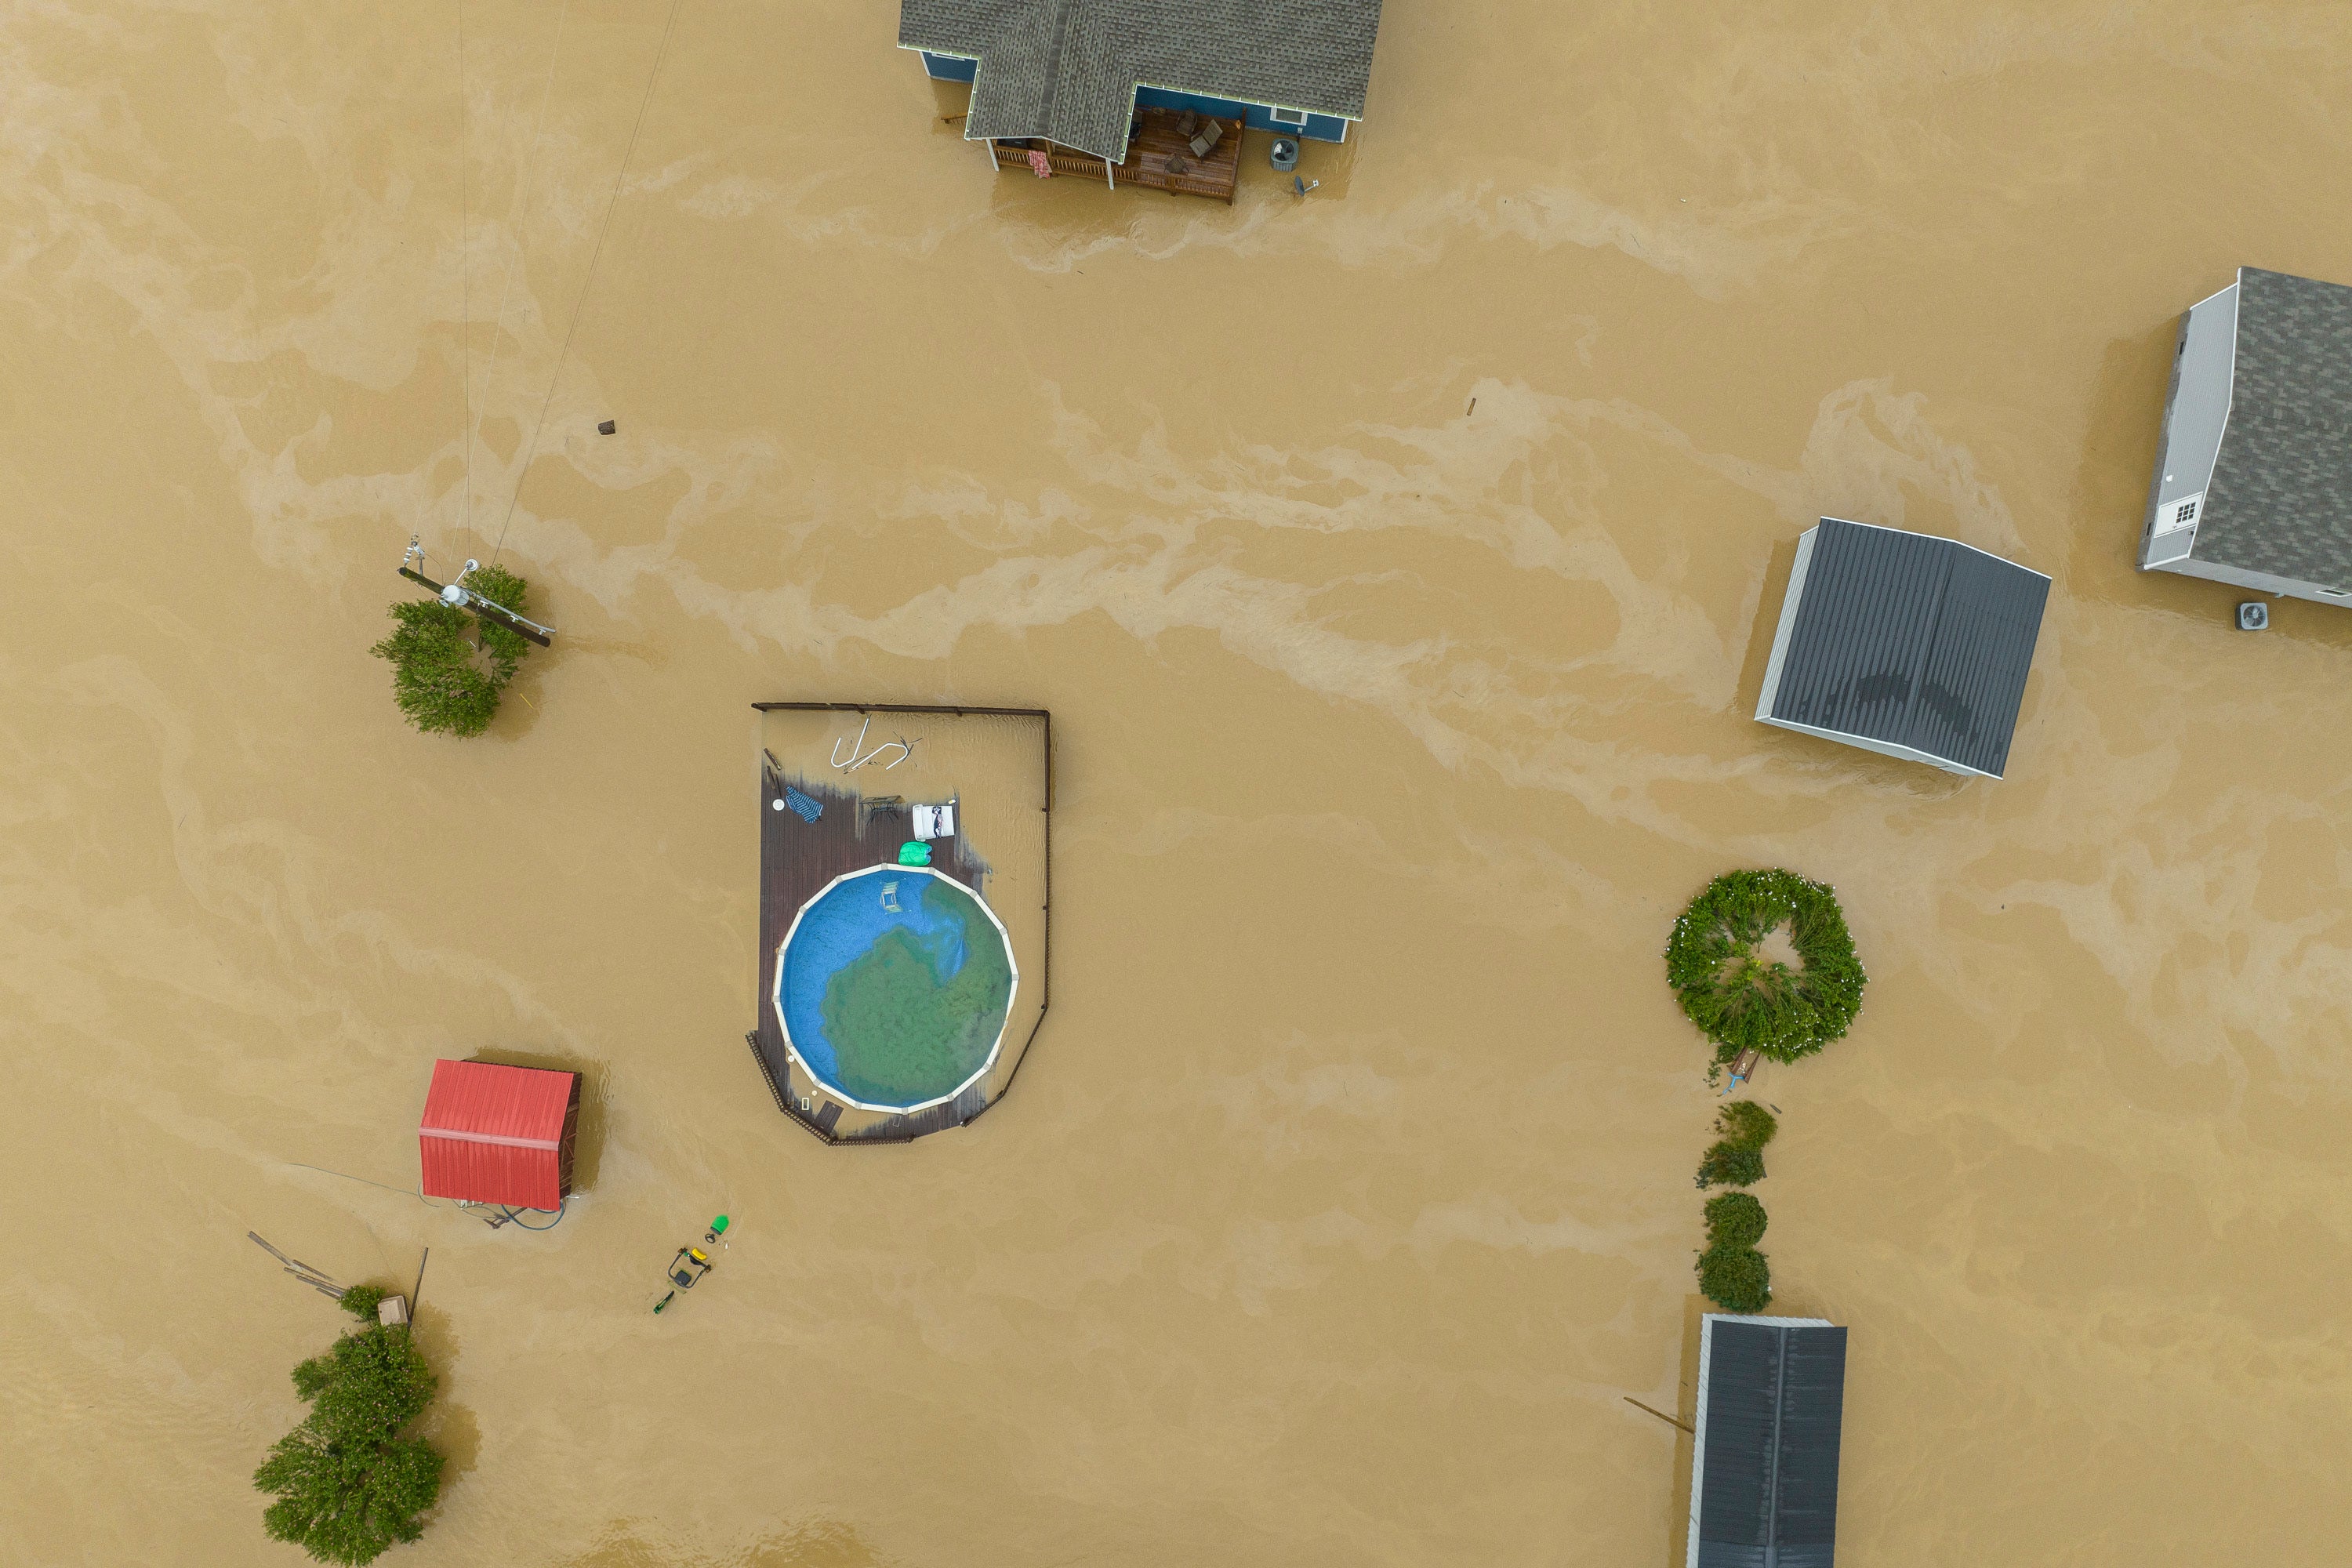 Imagen aérea de un área residencial inundada en Quicksand, Kentucky, mientras las casas son rodeadas por fuertes corrientes